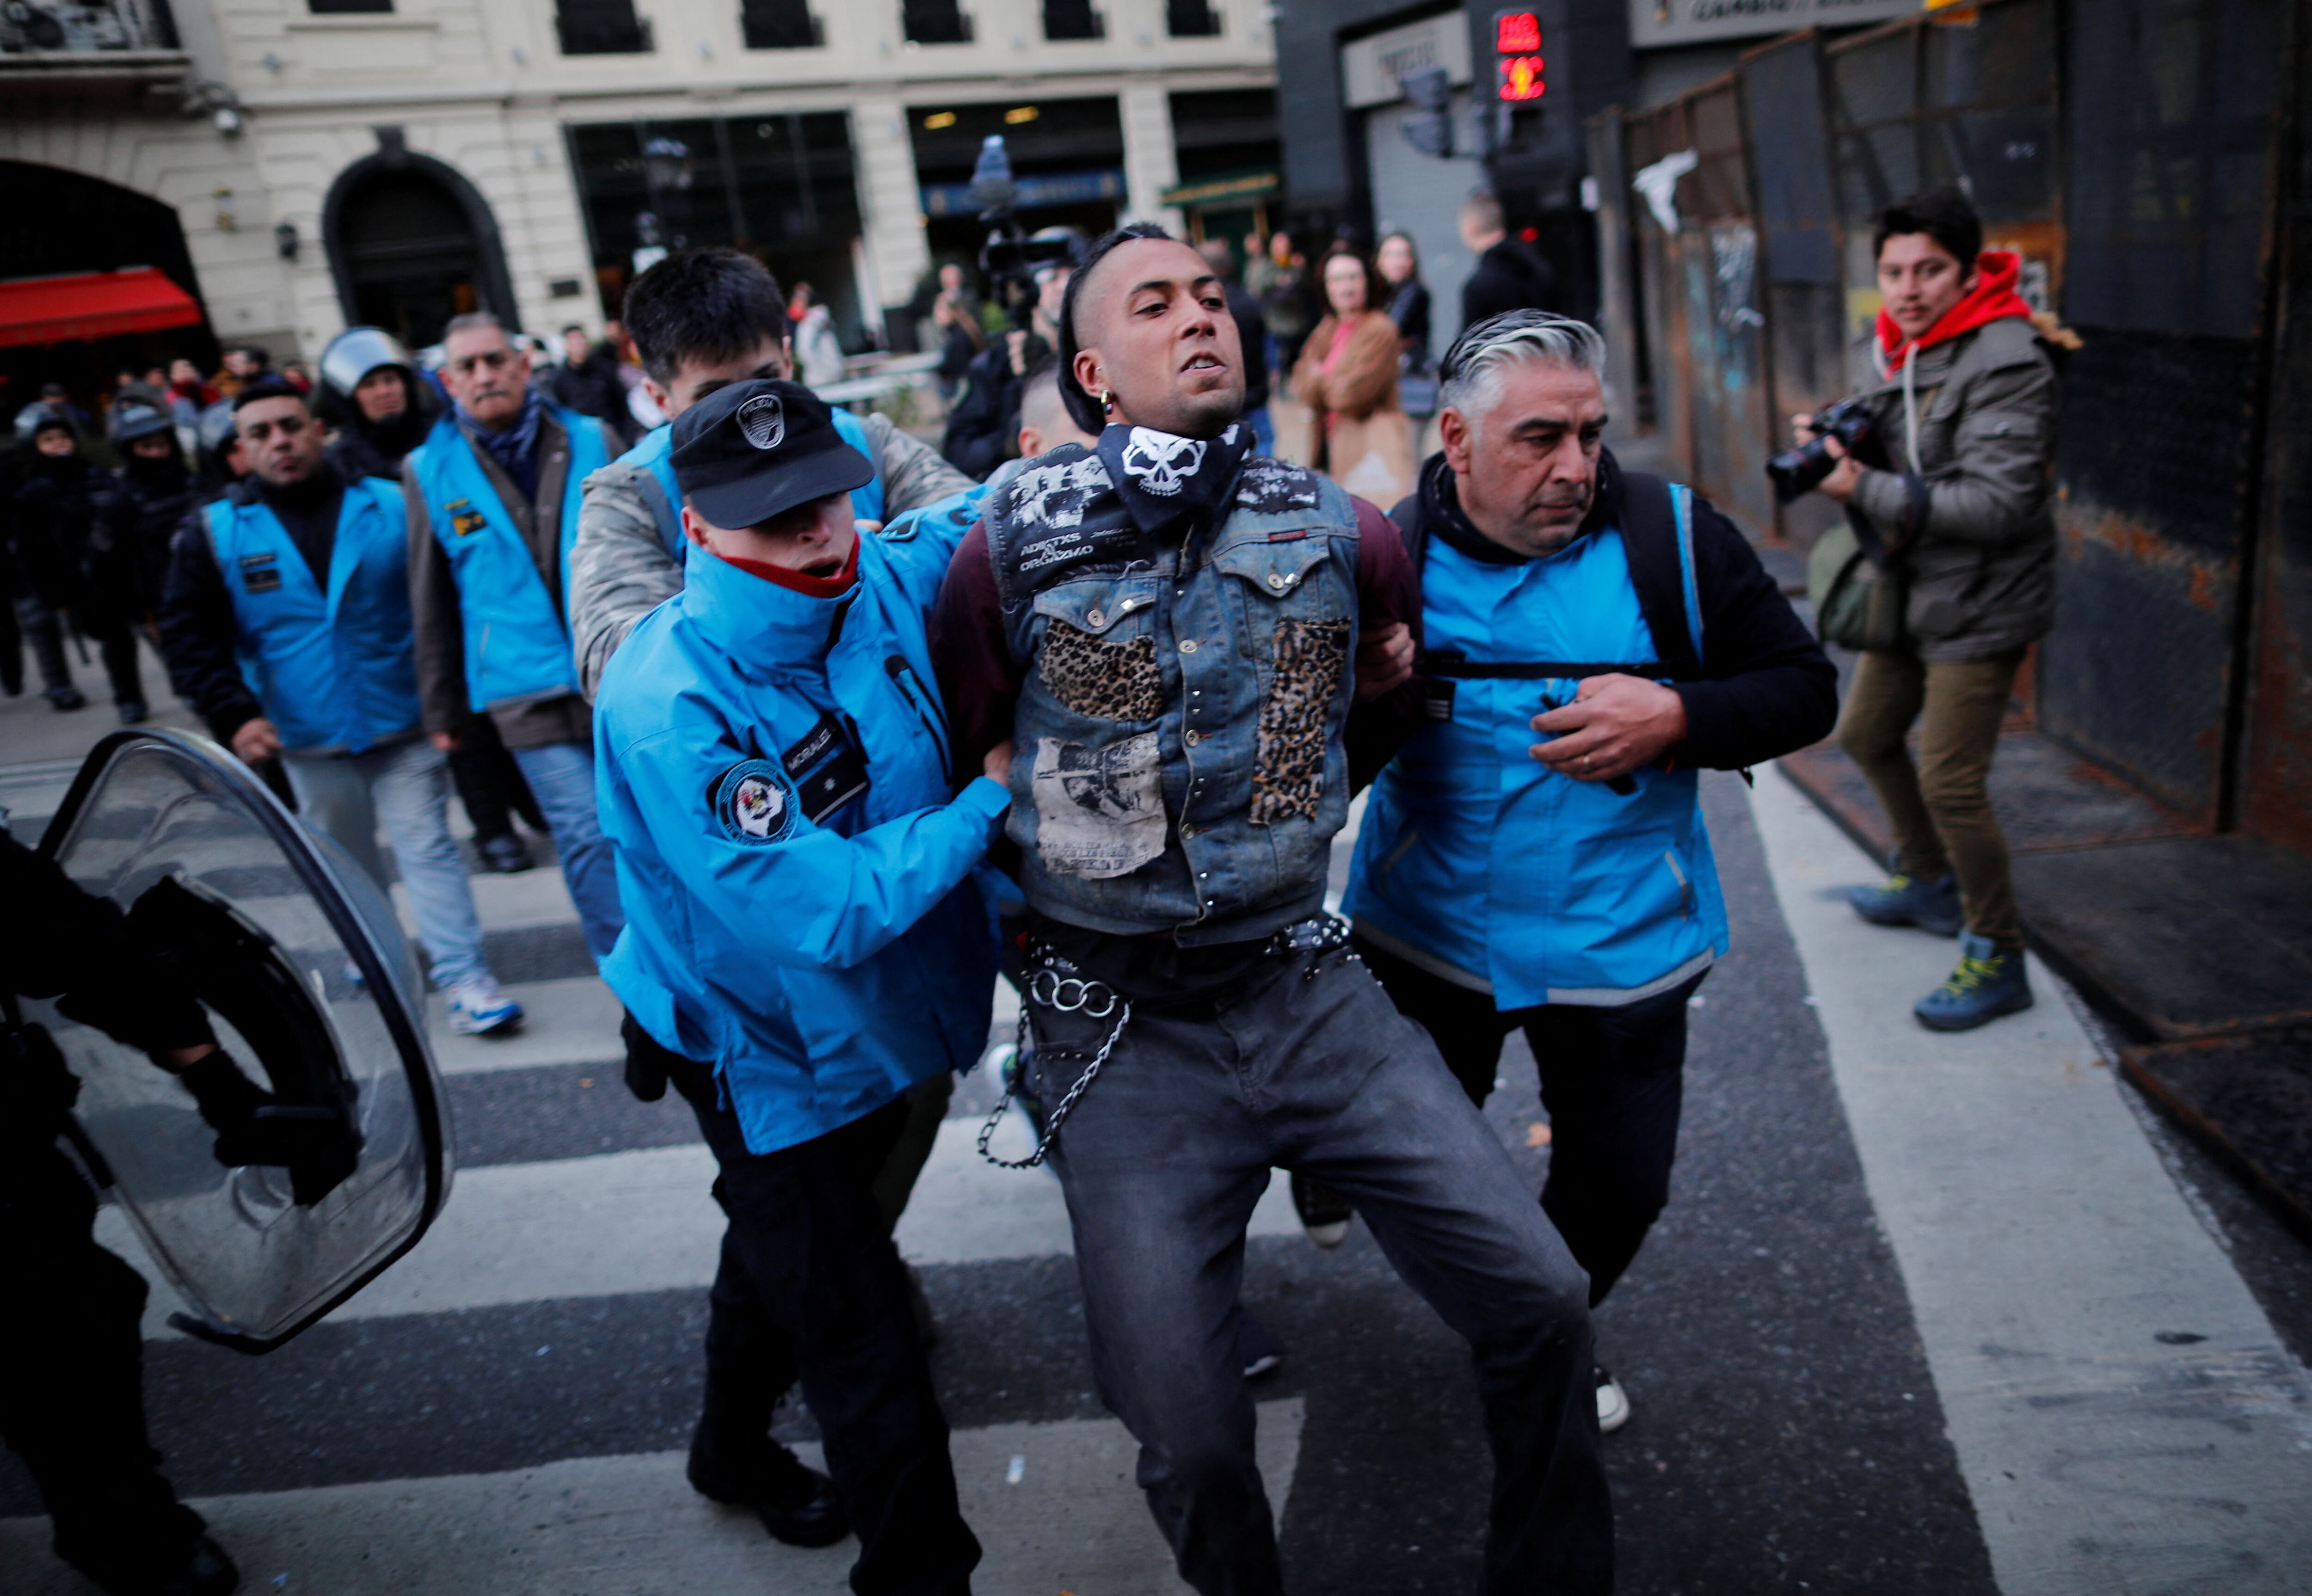 Afuera del recinto, los manifestantes se enfrentaron con la Policía (REUTERS)